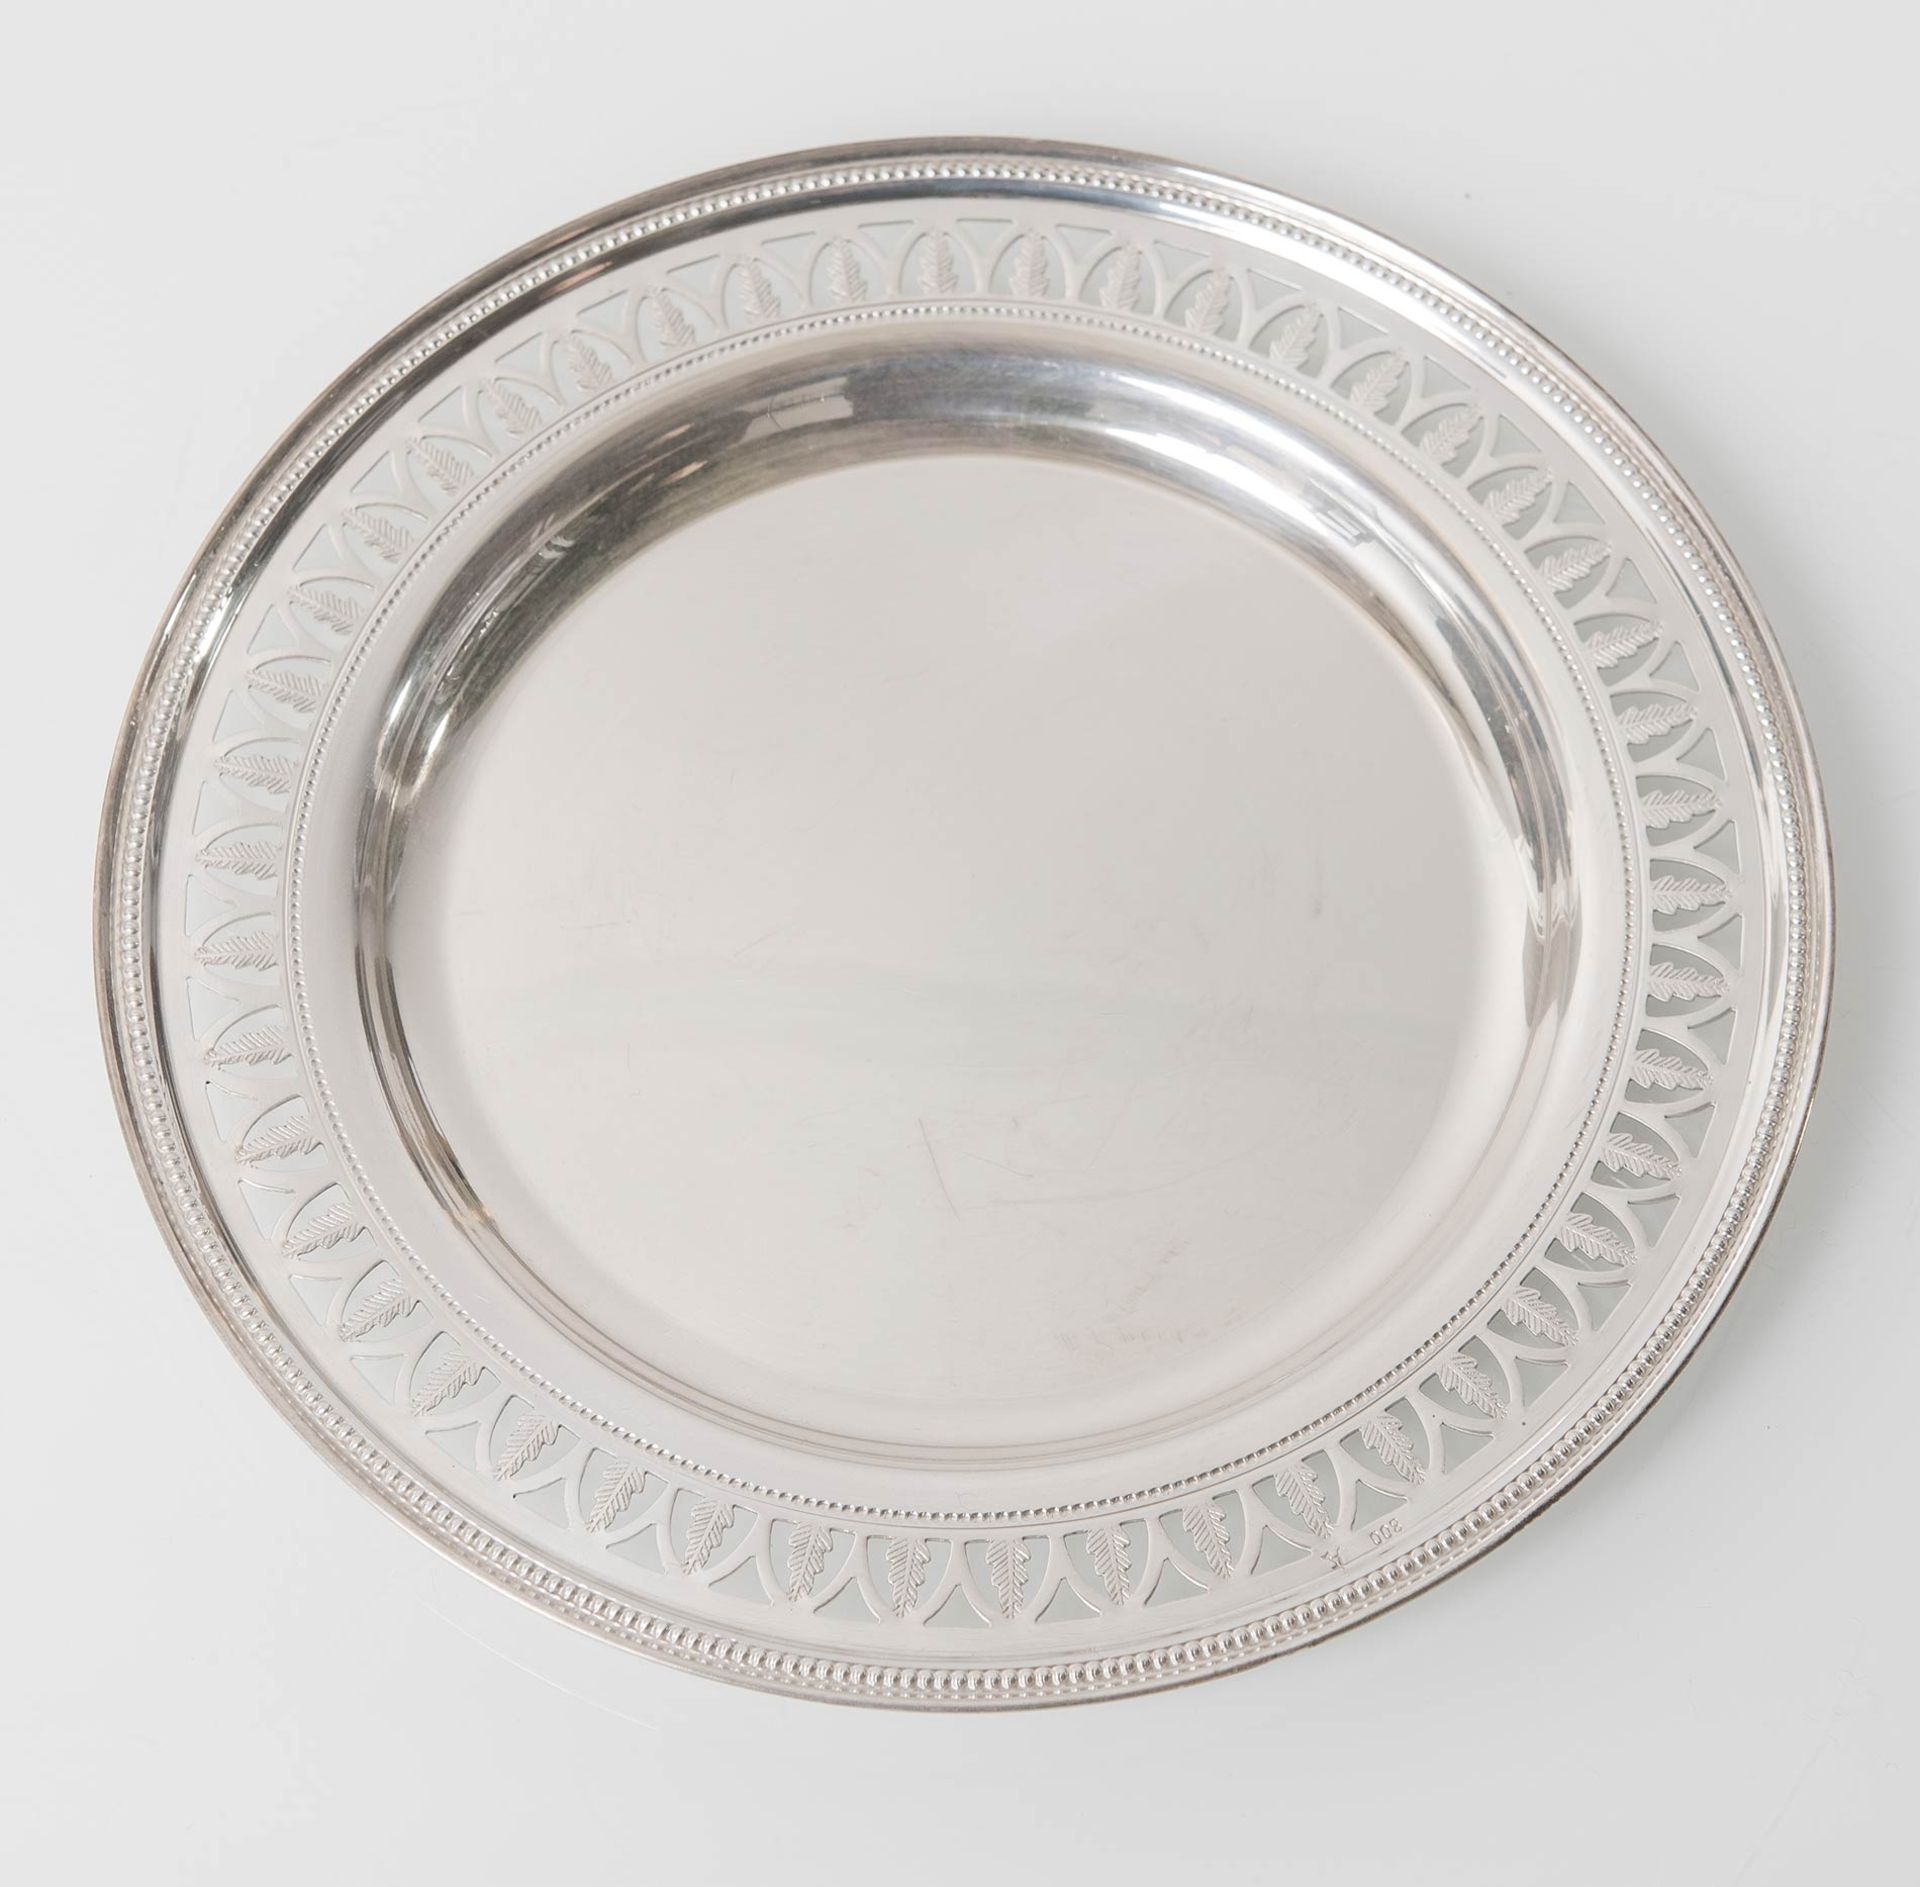 Dodici piatti da pane in argento, Italia, fine XIX - inizio XX secolo. - Image 4 of 5